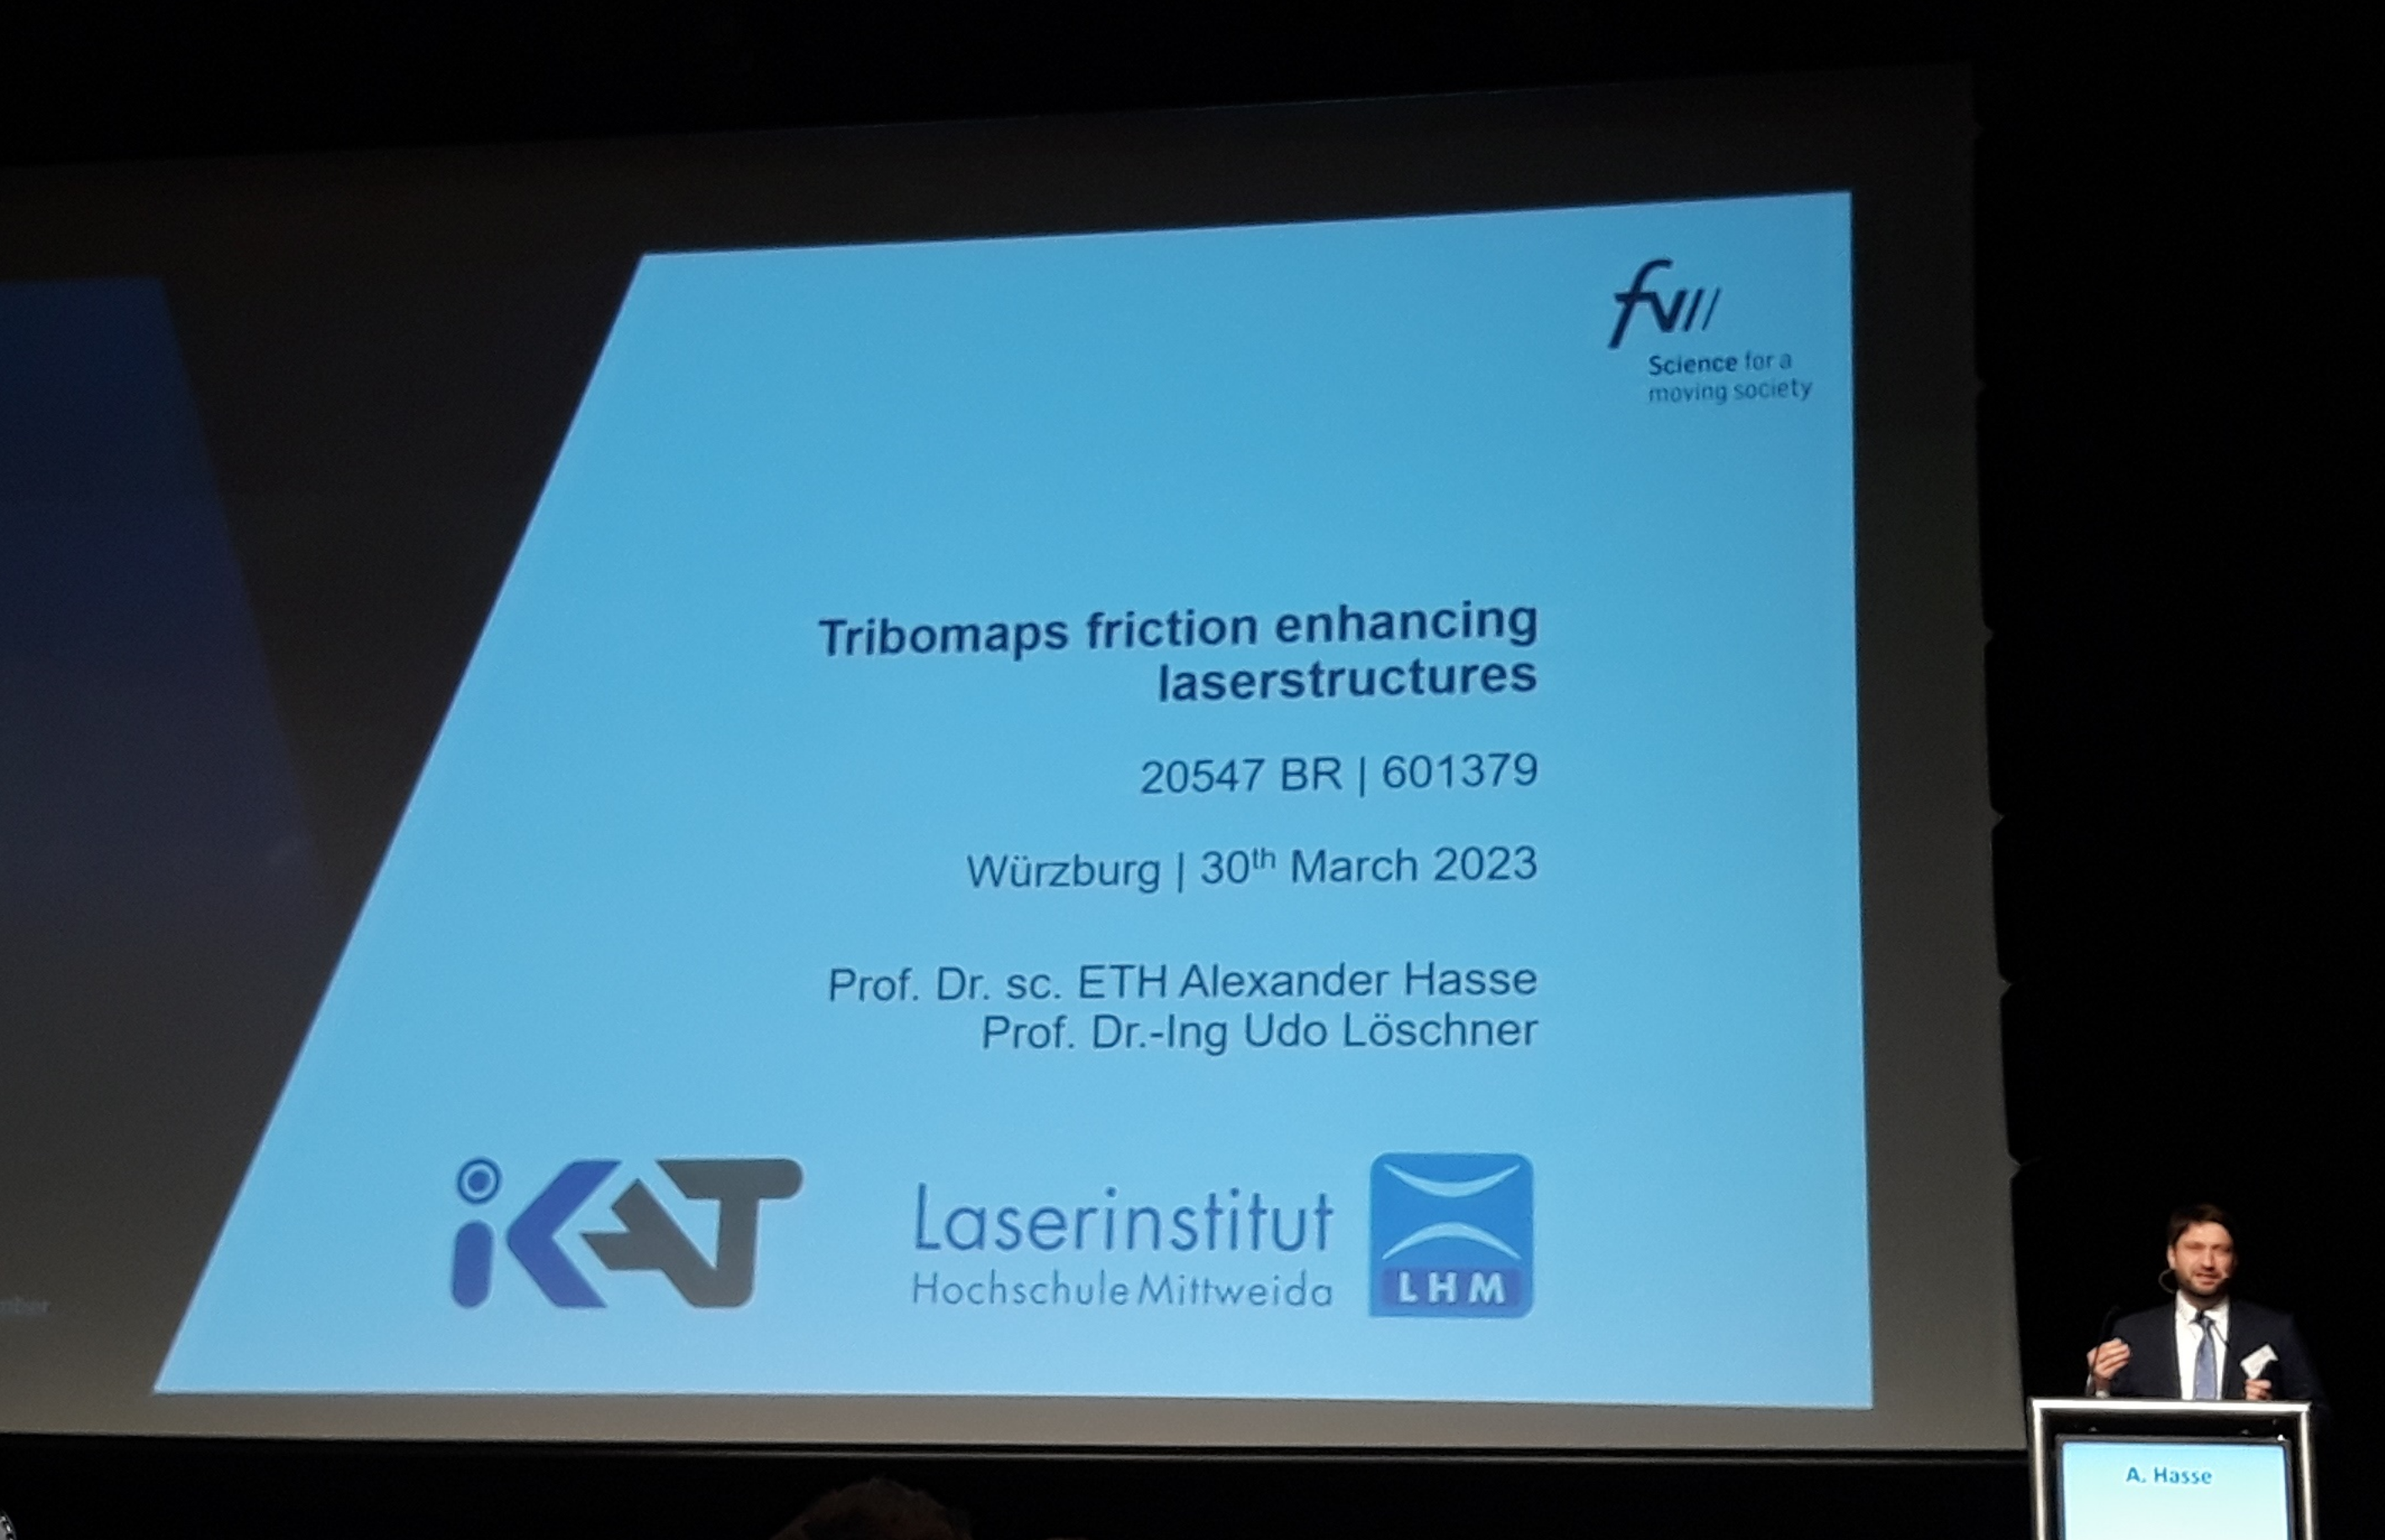 Bild zeigt Präsentationsfolie mit Vortragstitel und Prof. Dr. A. Hasse am Rednerpult